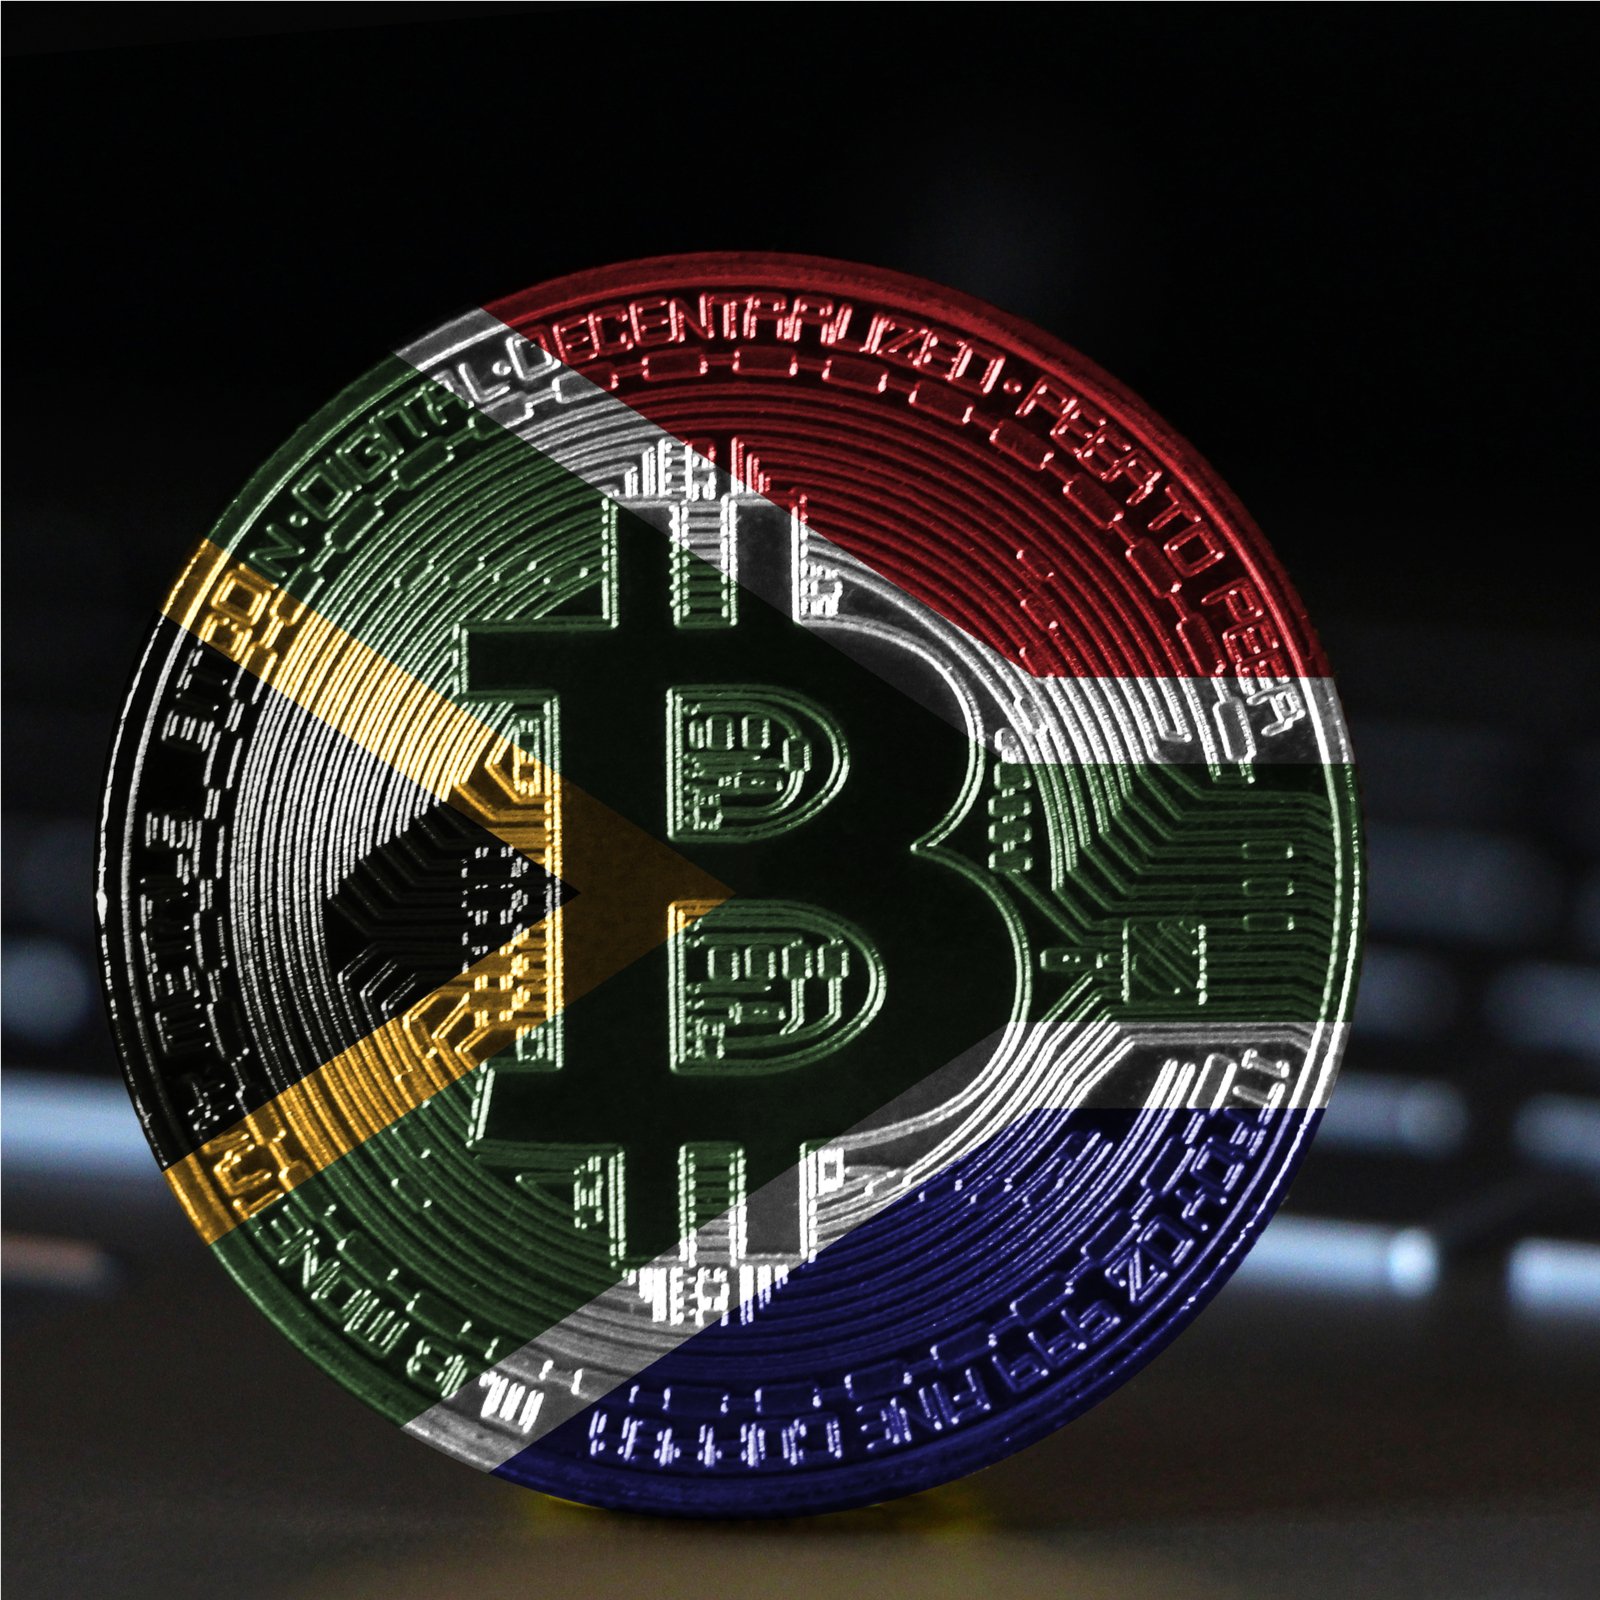 Buy bitcoin south africa обмен биткоин курс кроны